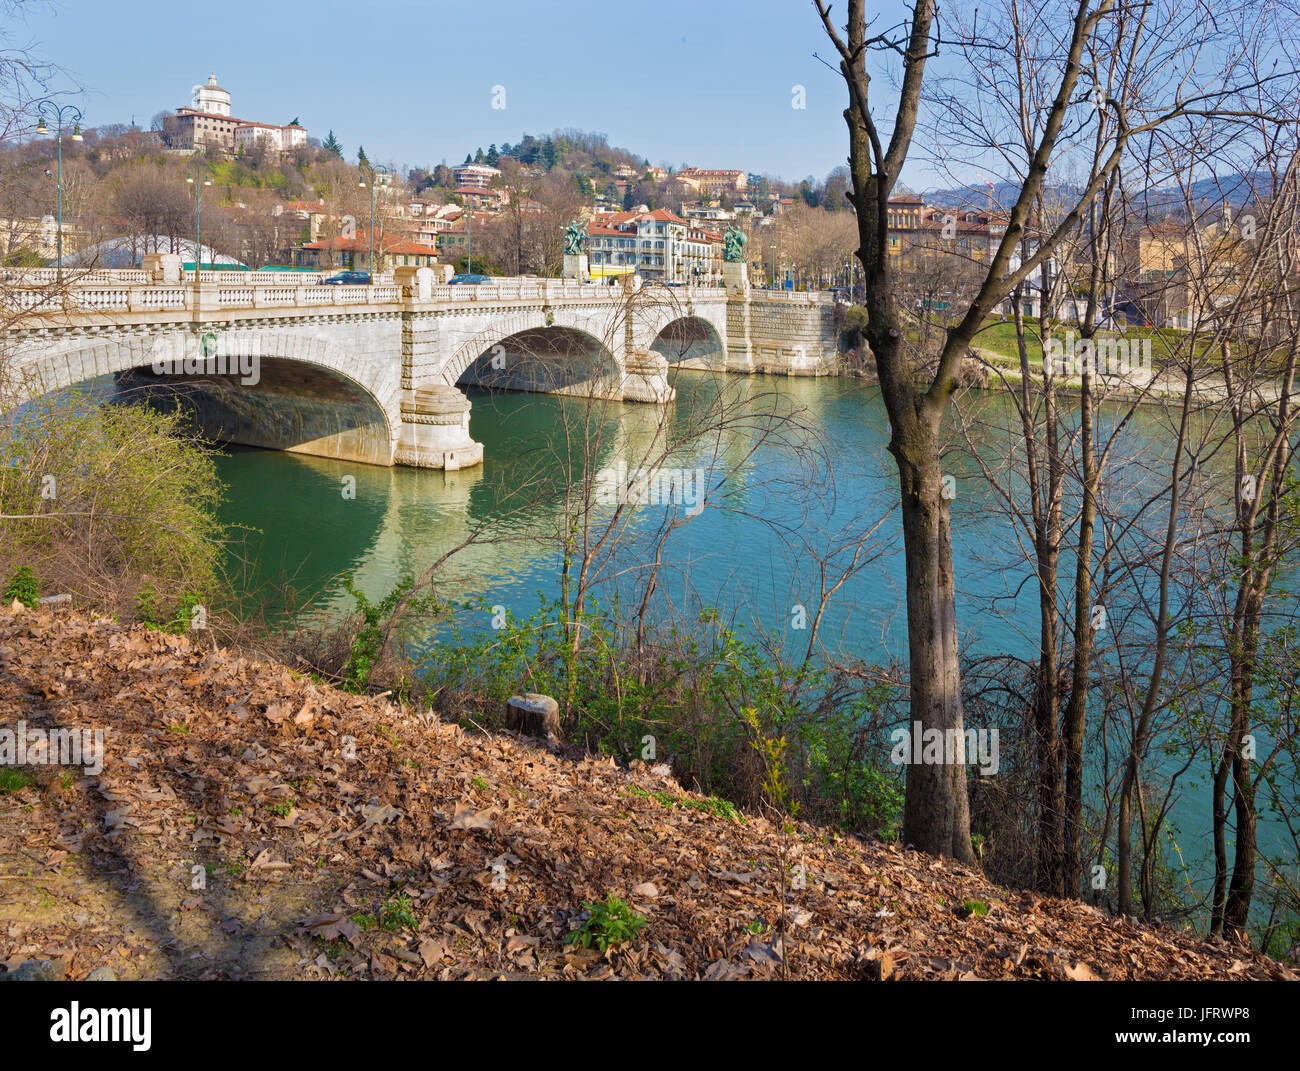 Turin - die Brücke Umberto I und die Halterung der Kapuziner. Stockfoto